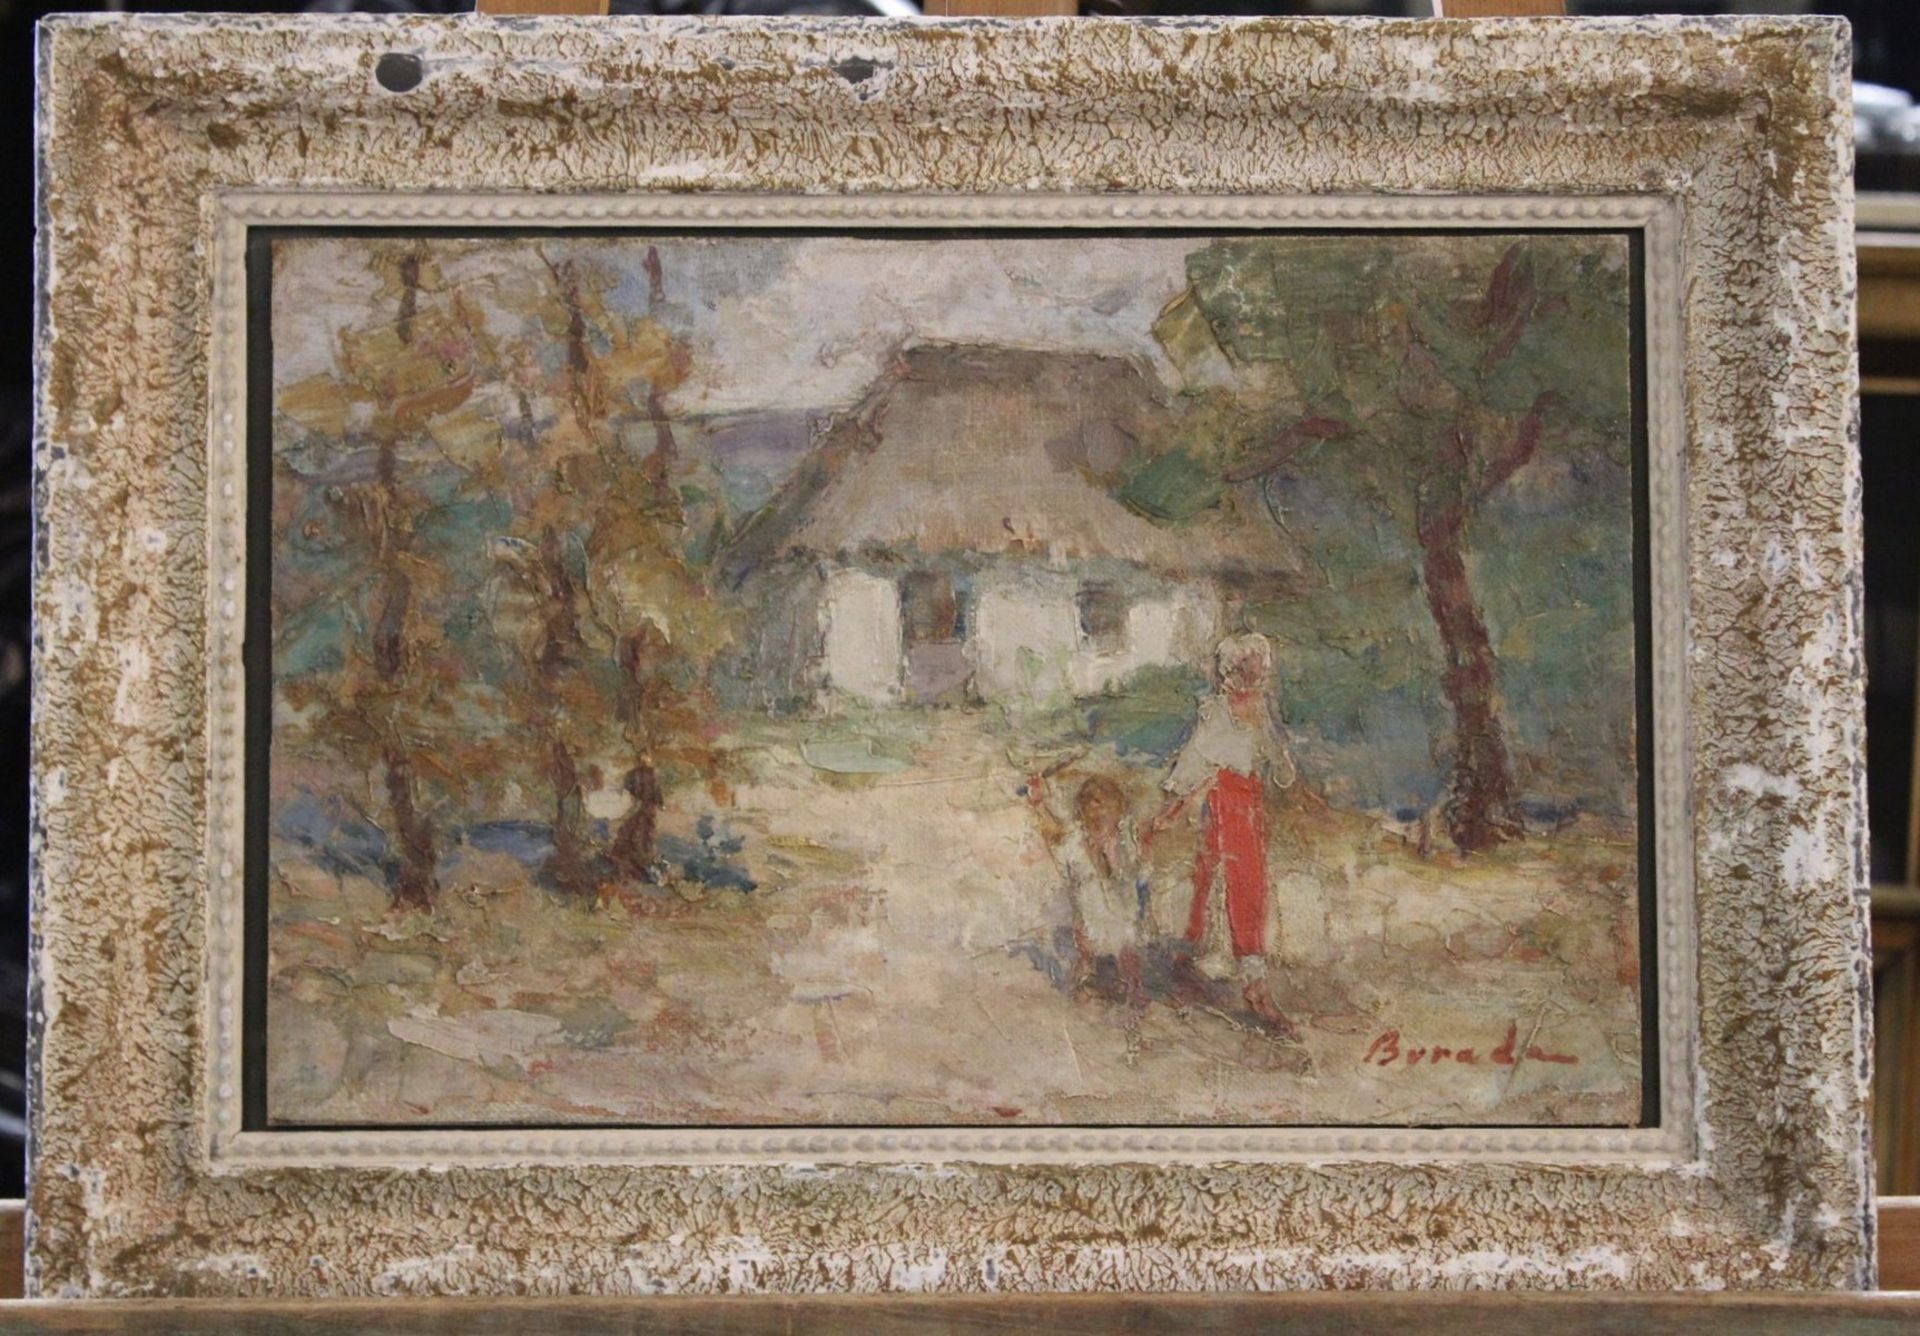 Sever BURADA (1896-1968), Personen vor Bauernhütte, Öl/Hartfaser, gerahmt, RG 36 x 49cm, Rahmen - Image 3 of 3